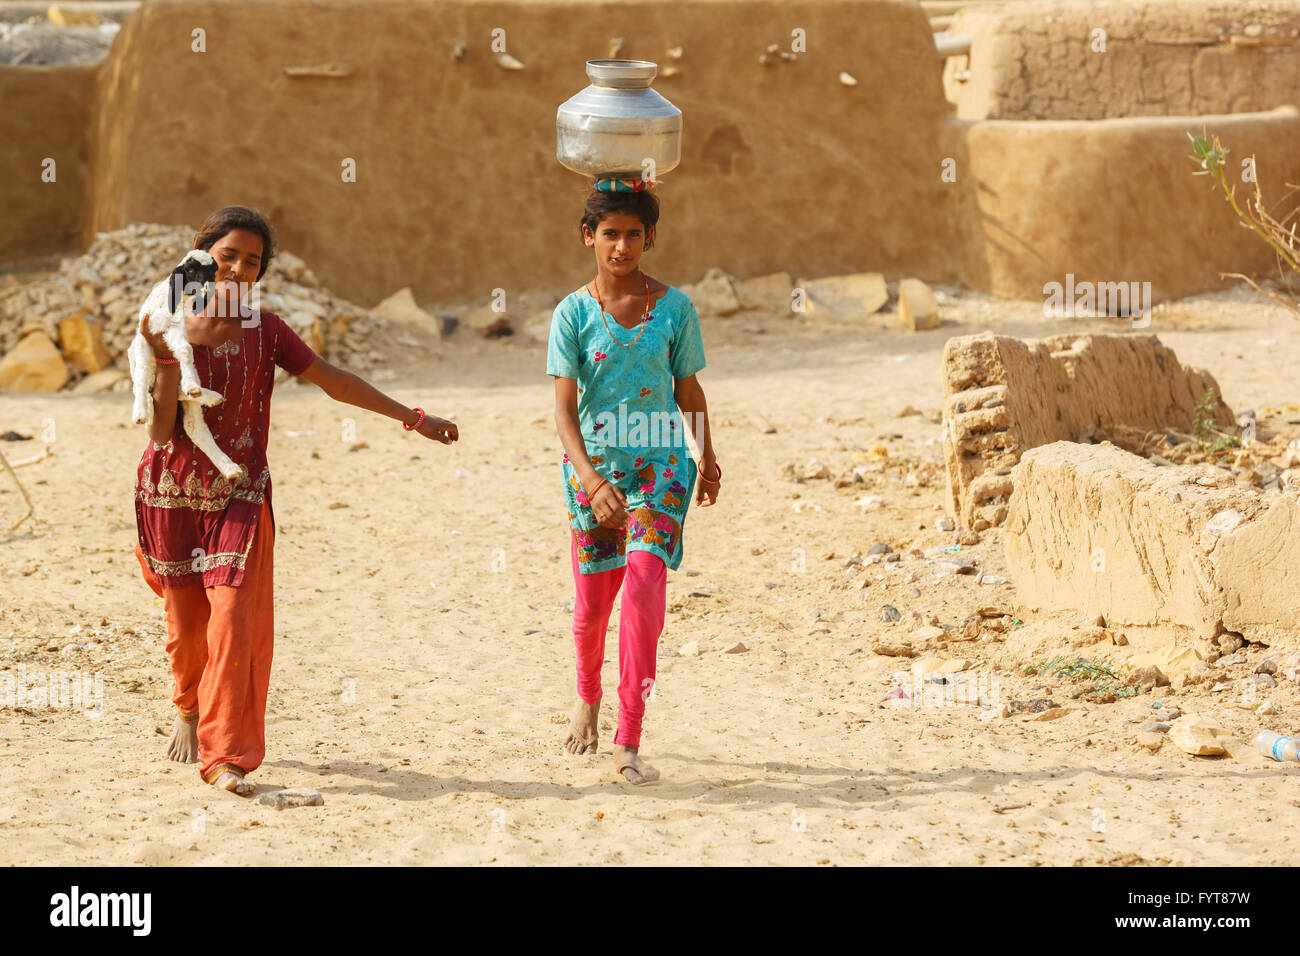 Las mujeres y los niños sacan agua del sorteo y así llevar las ollas a su aldea cerca del desierto de Thar, Jaisalmer, India Foto de stock